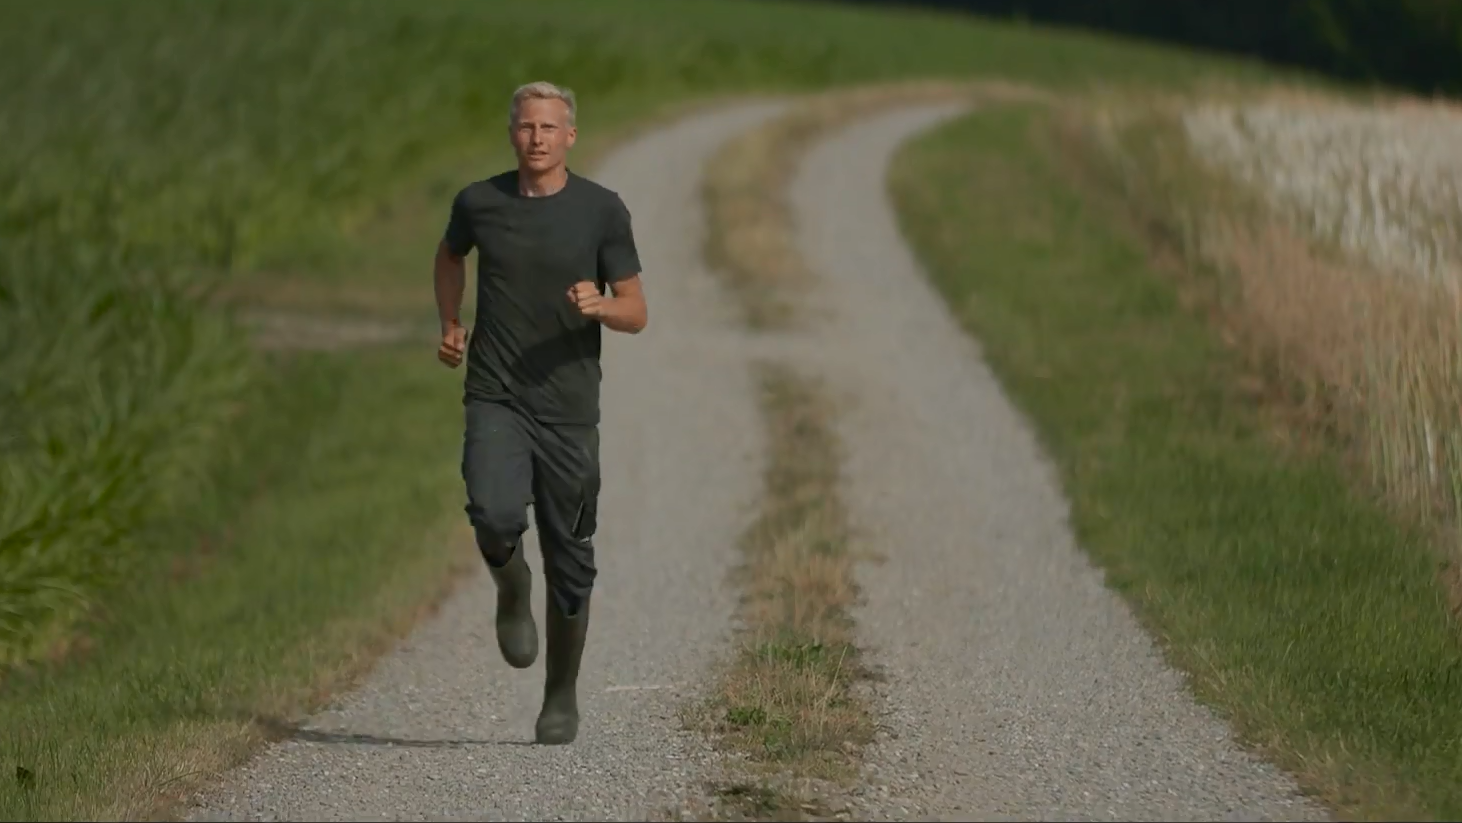 Der «Fastest Farmer» heisst so, weil Wägeli laut eigener Aussage der schnellste Marathonläufer ist, der gleichzeitig als Bauer arbeitet.